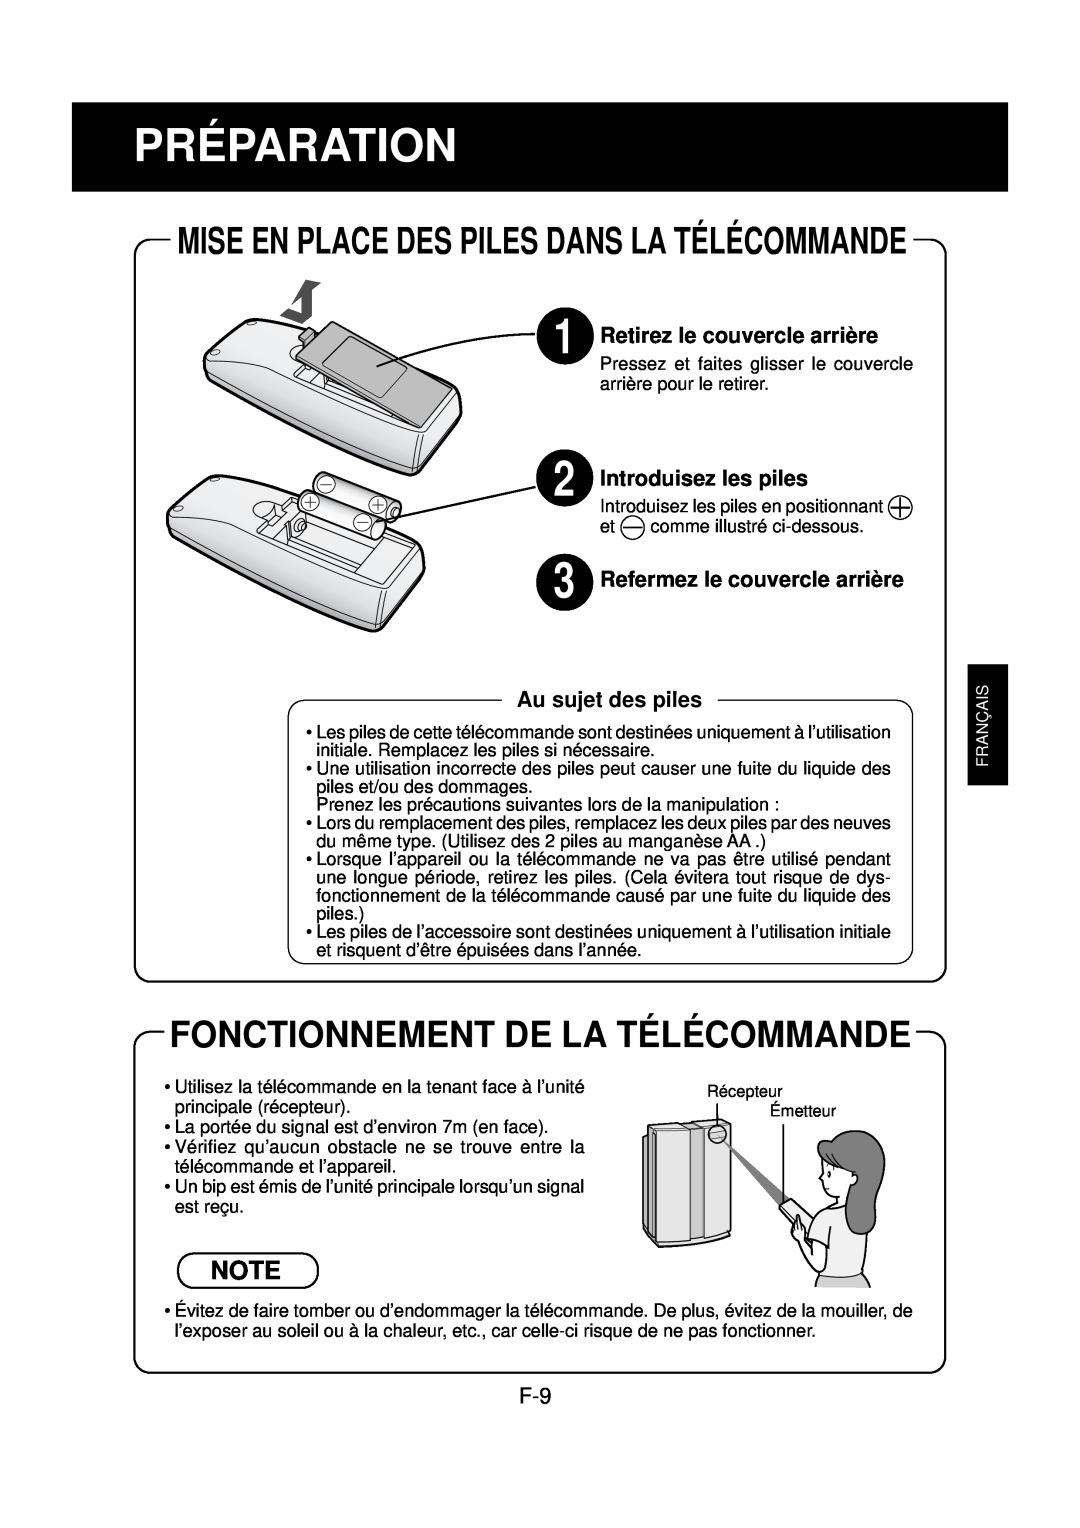 Sharp FP-N60CX Préparation, Fonctionnement De La Télécommande, Mise En Place Des Piles Dans La Télécommande 